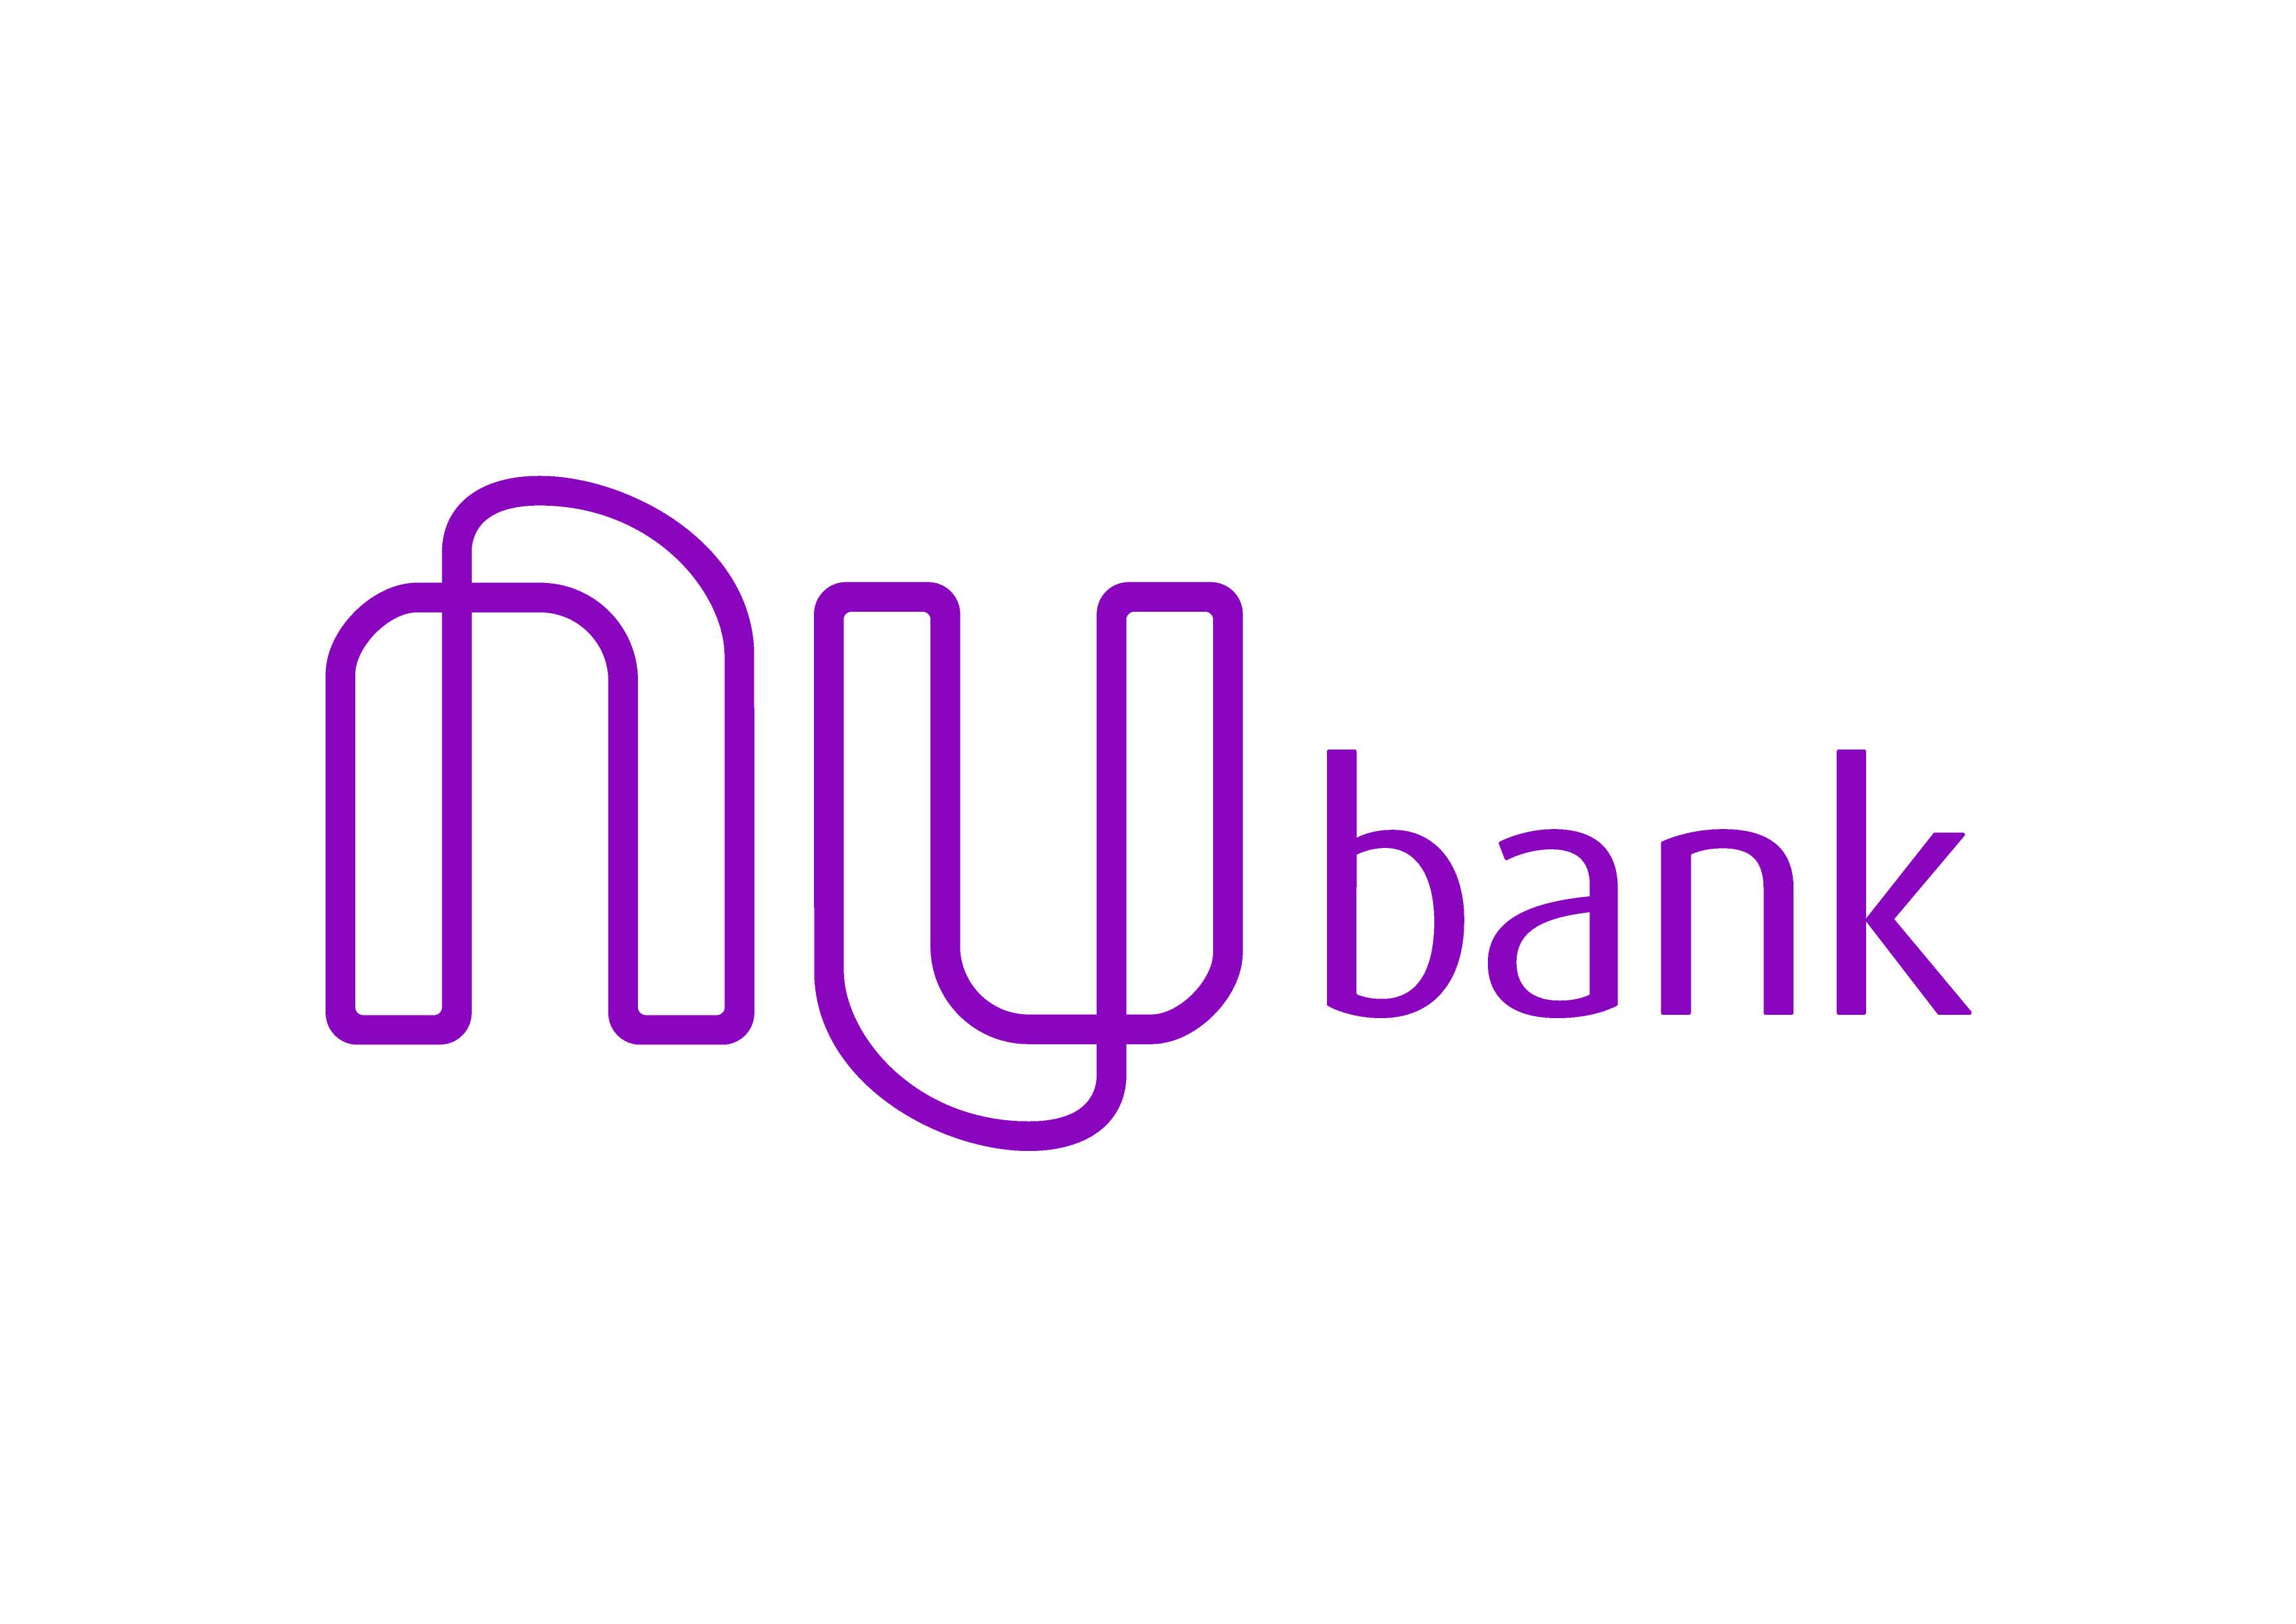 Como funciona o Empréstimo Nubank